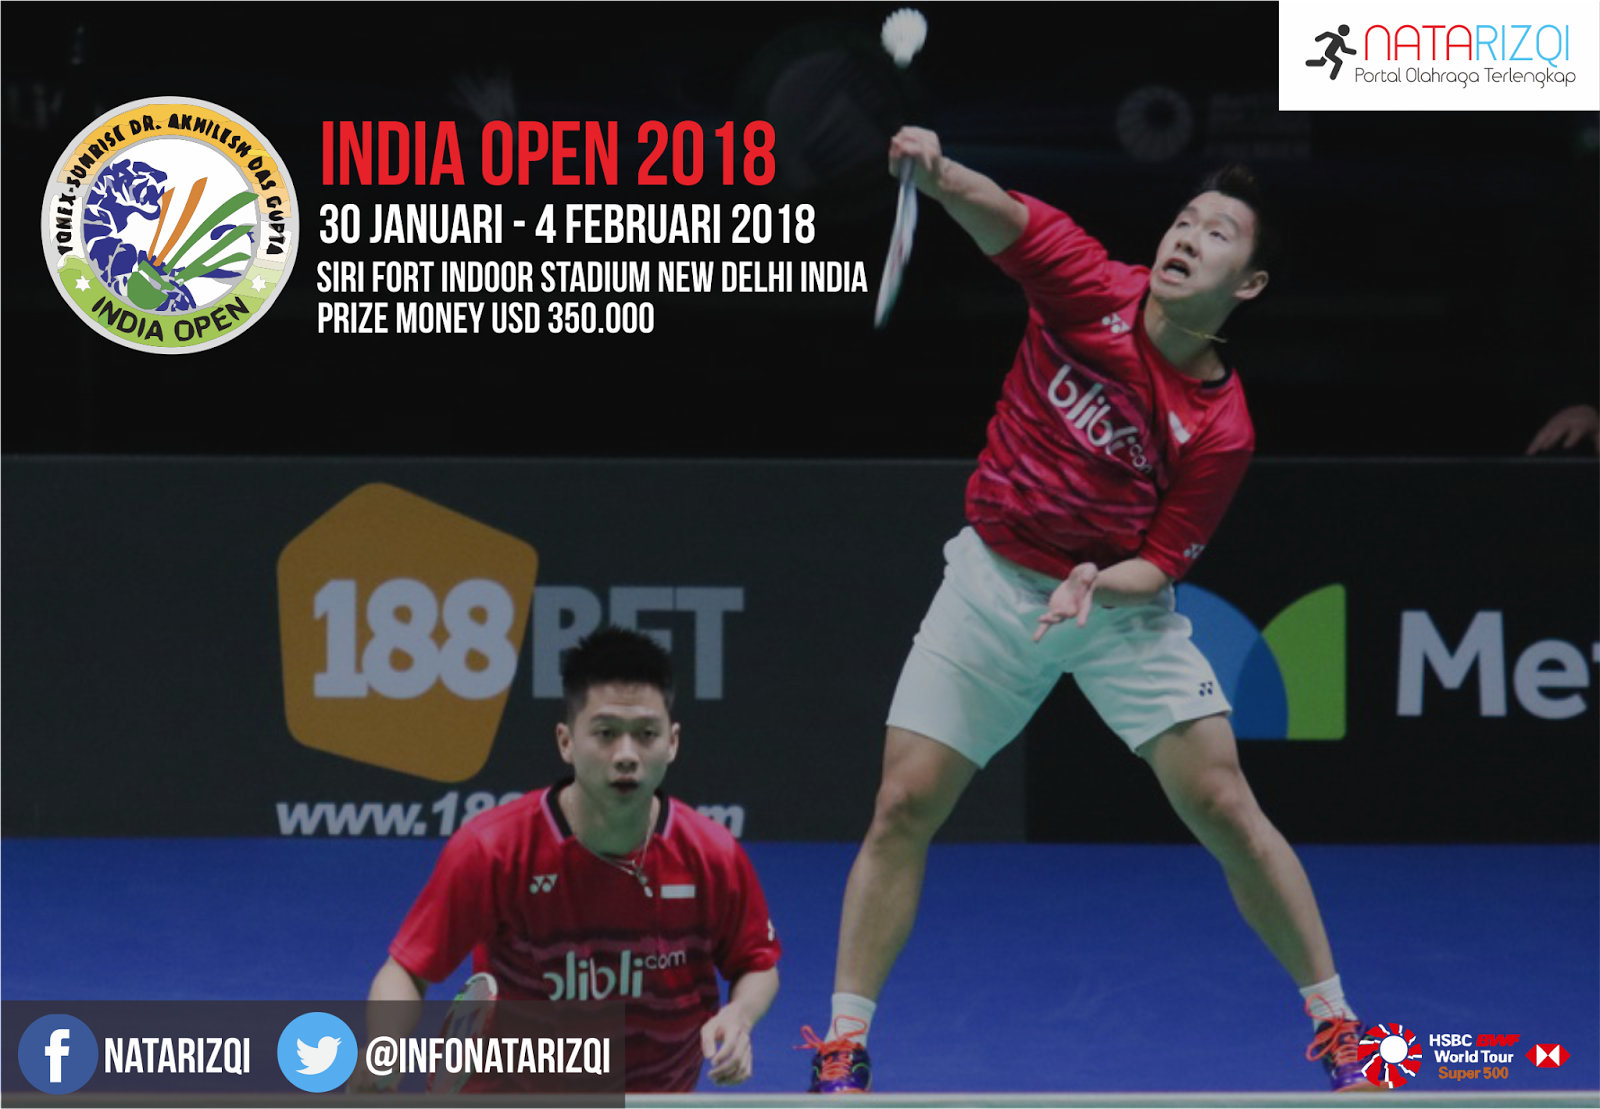 Jadwal Lengkap Yonex Sunrise Dr. Akhilesh Das Gupta India Open 2018